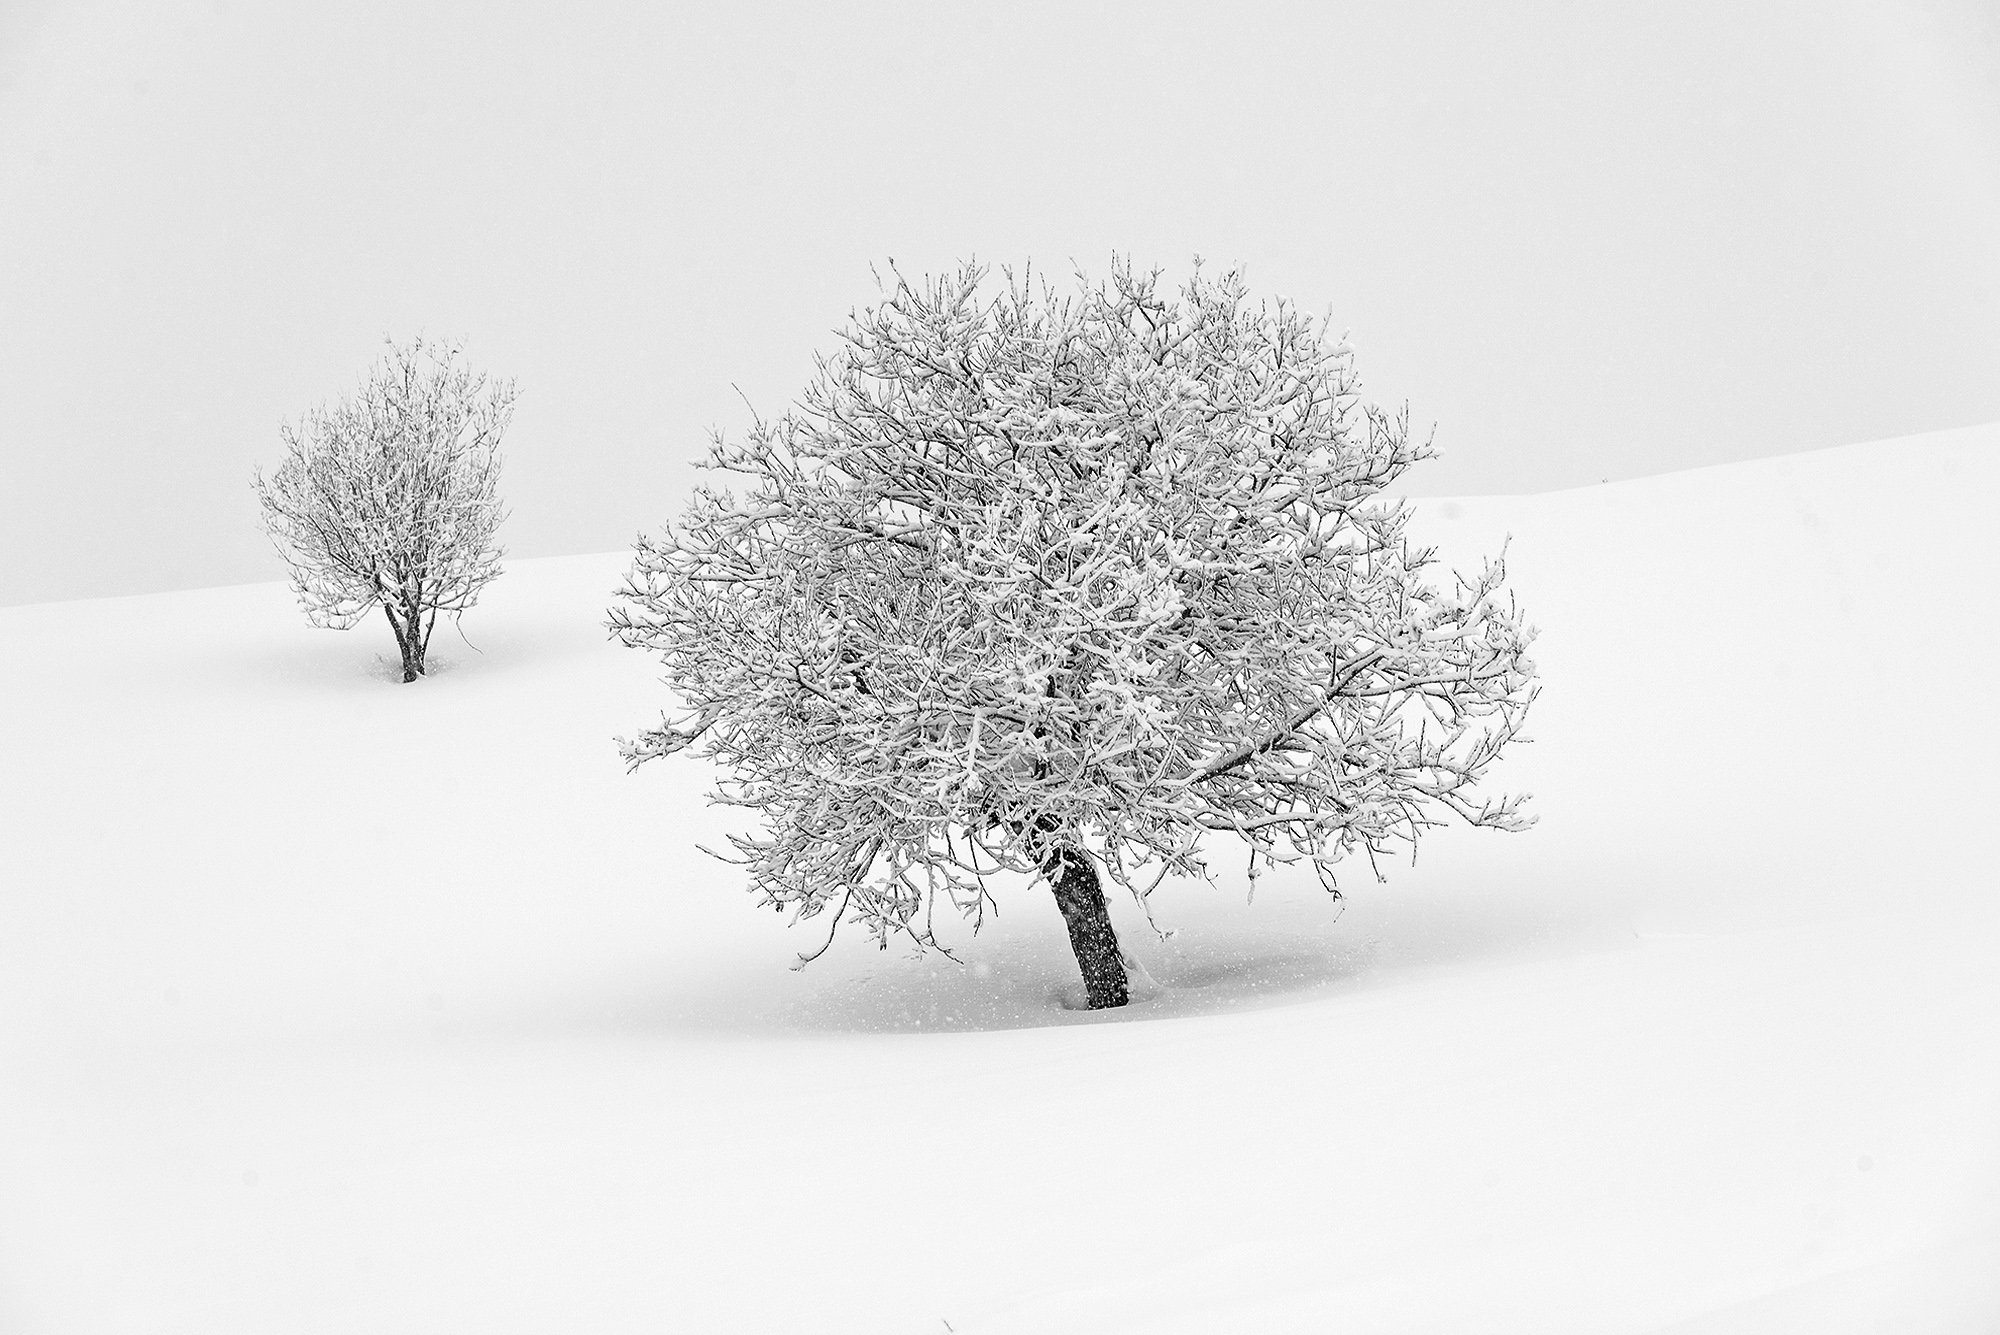 алтай, зима, снег, дерево, сибирь, снегопад, Павел Филатов